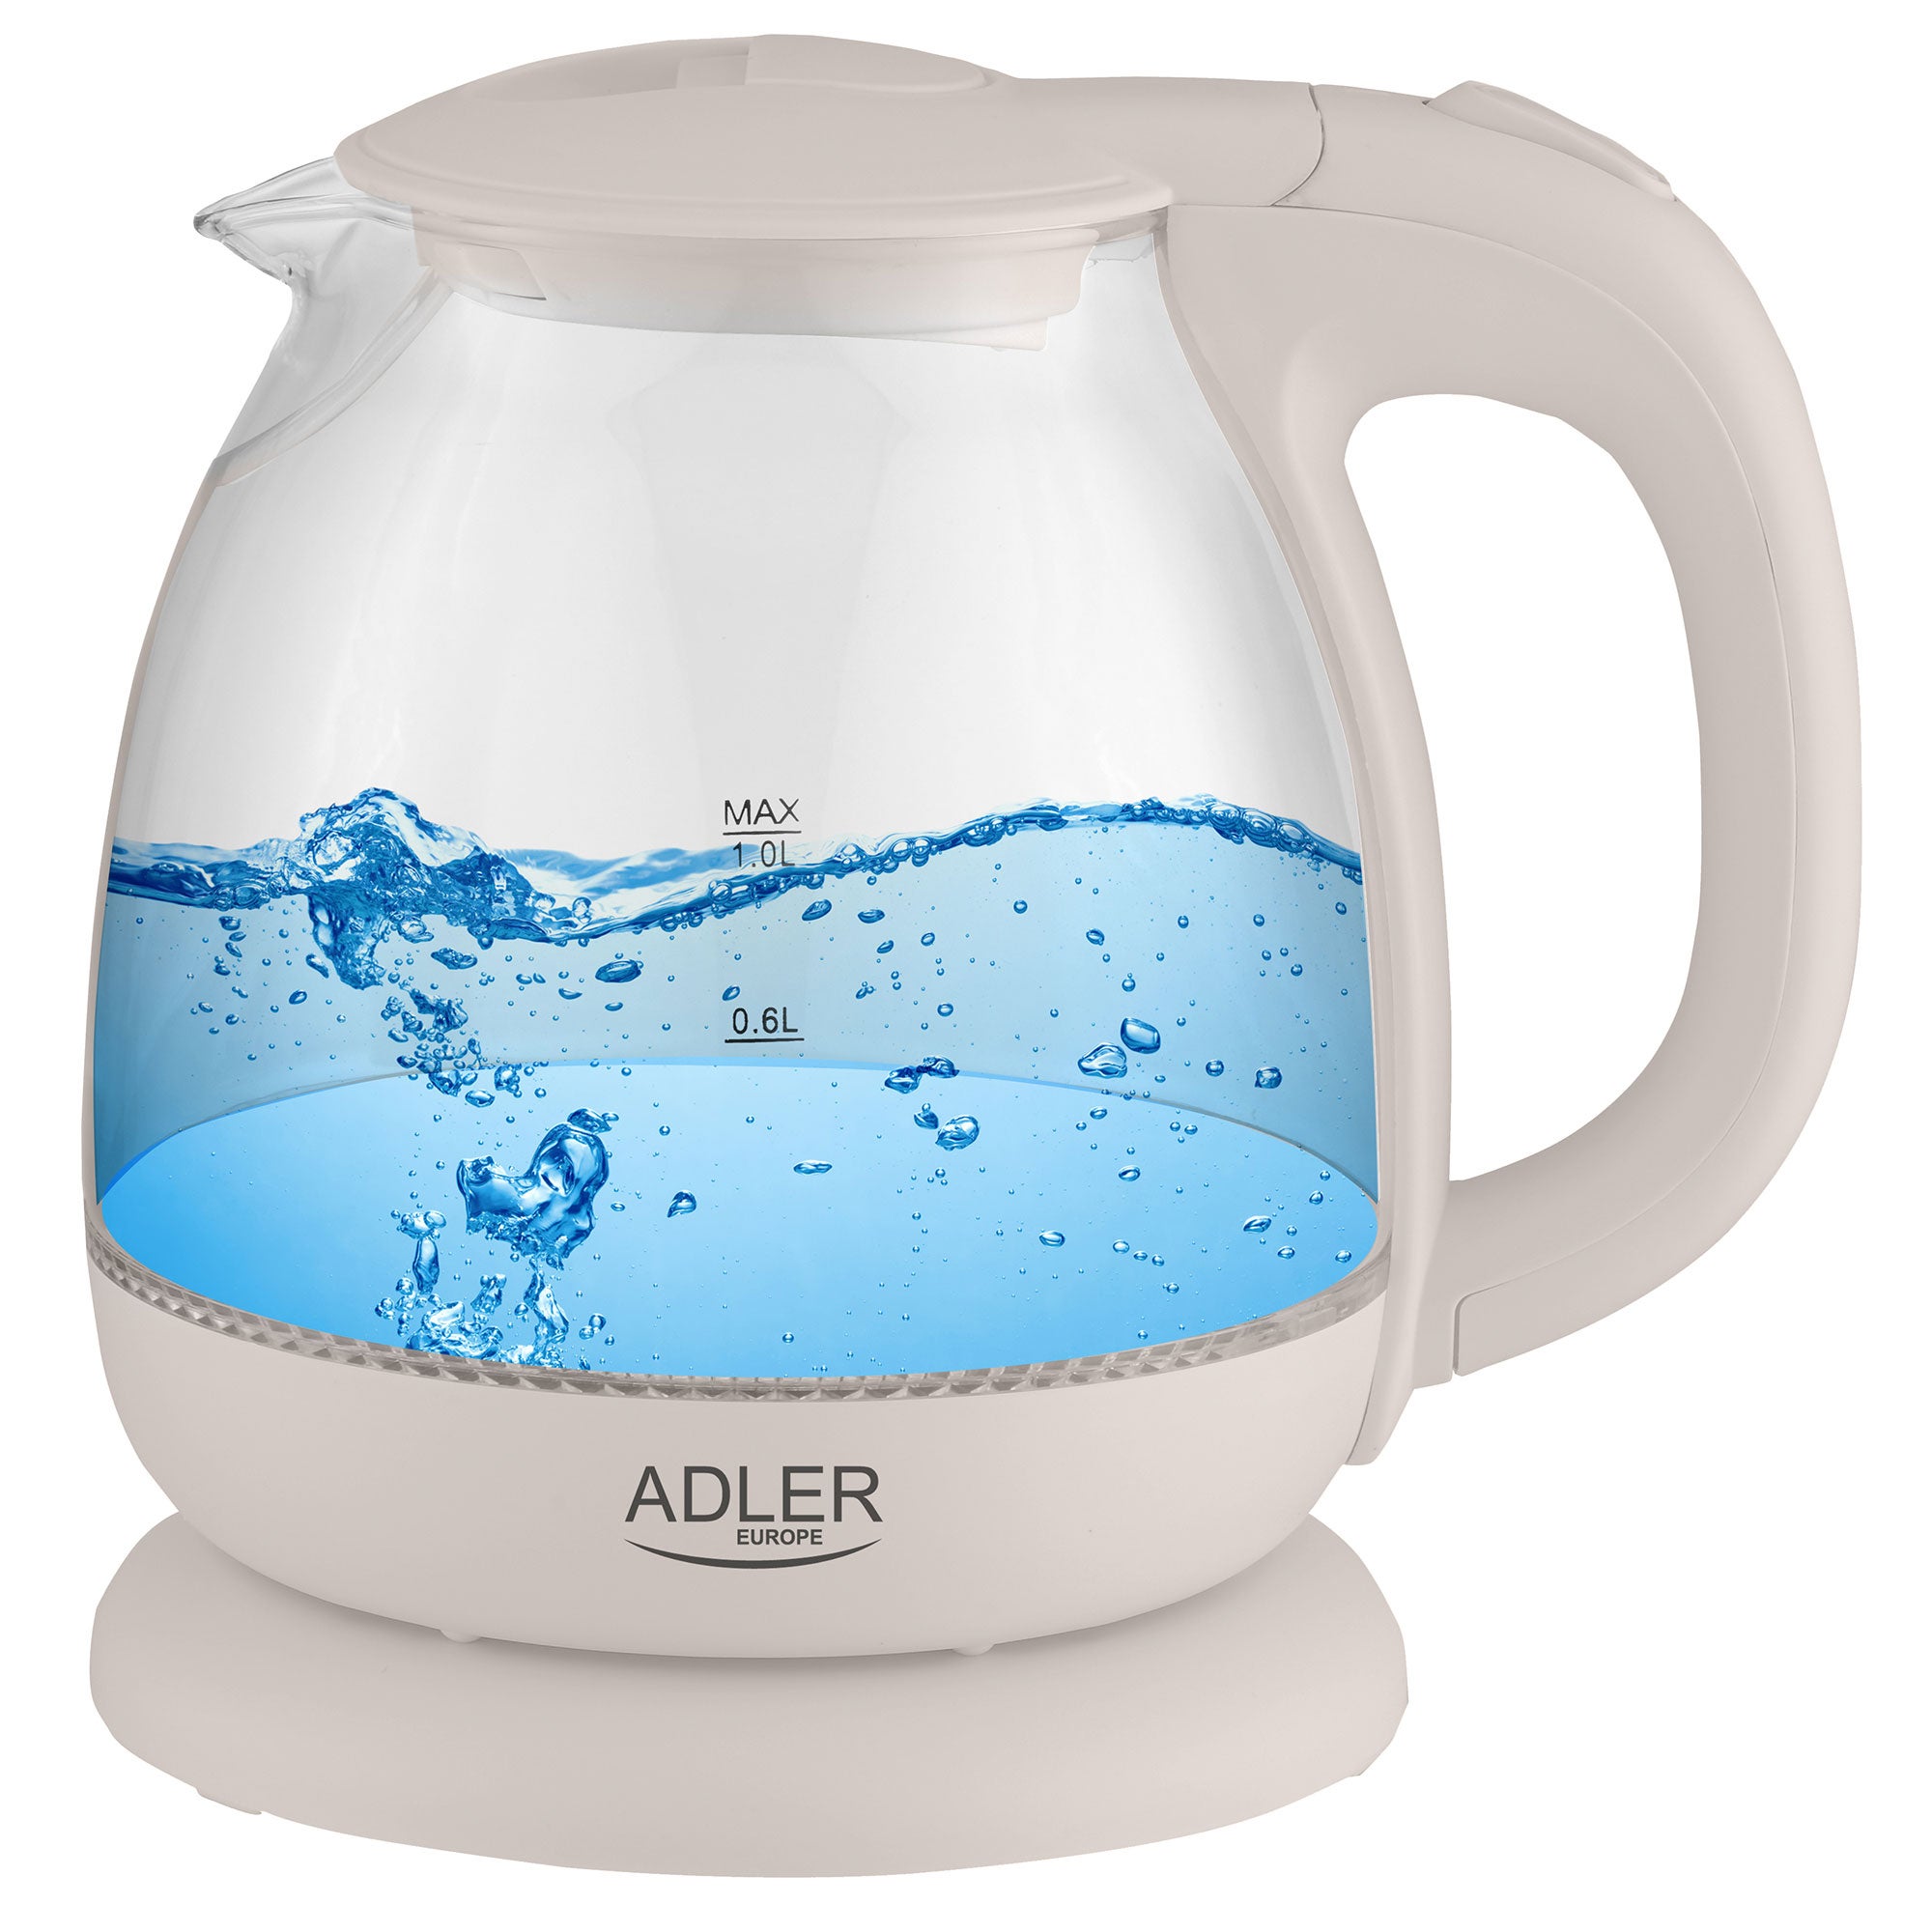 Adler AD1246 Hervidor de Agua Eléctrico Cristal 1,8 Litros